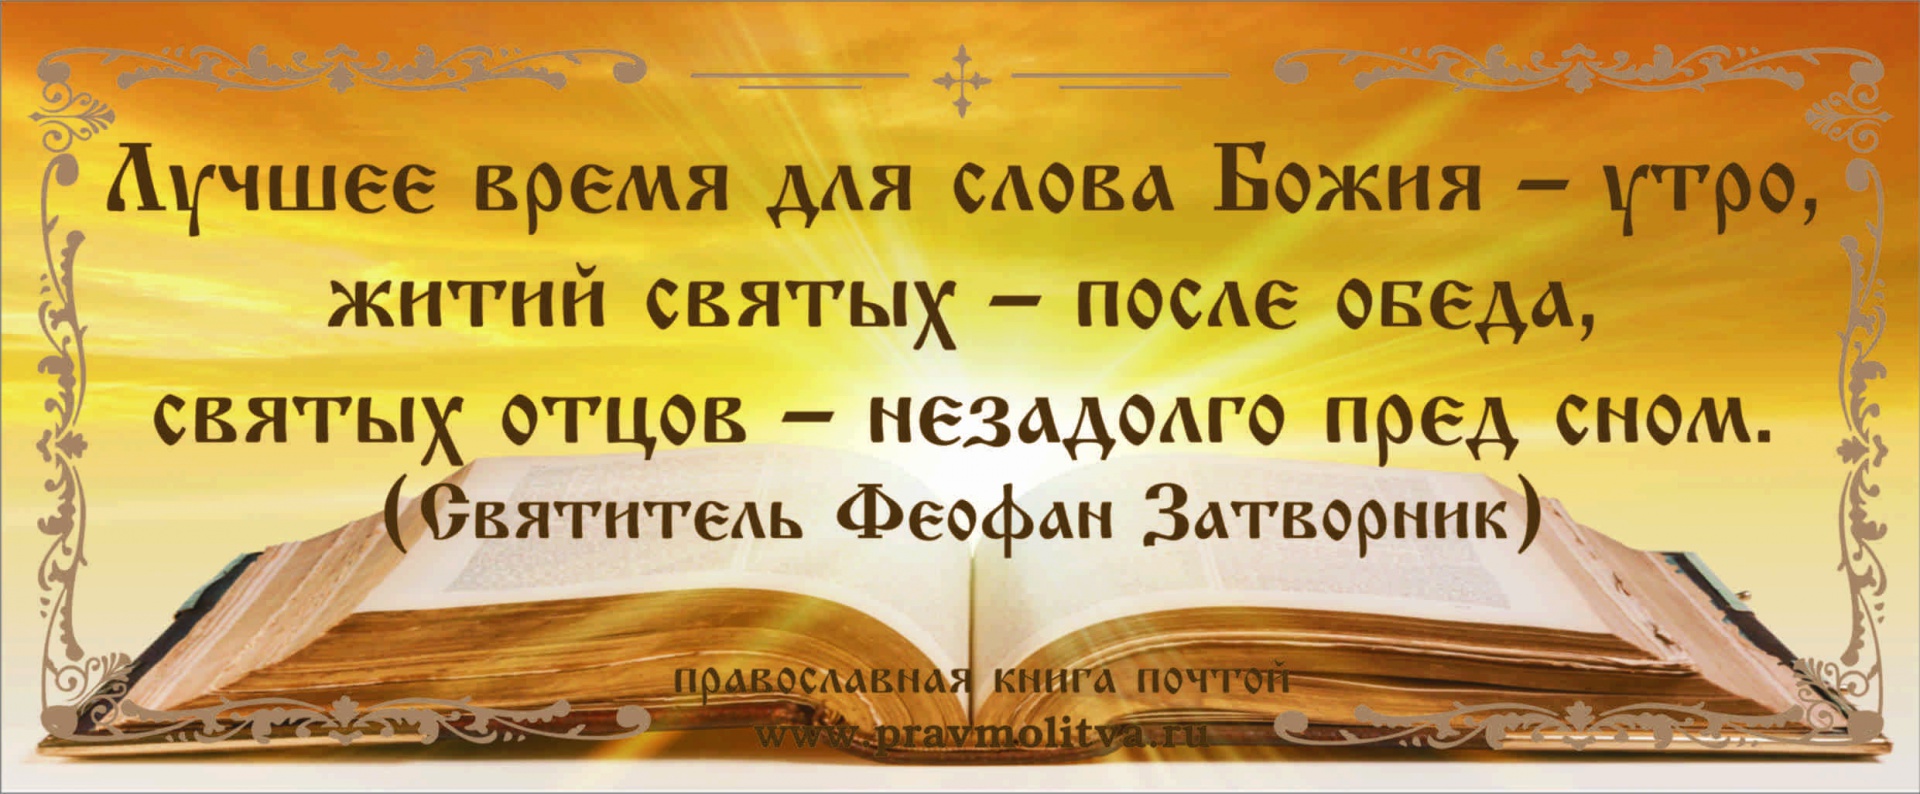 Цитаты о православной книге